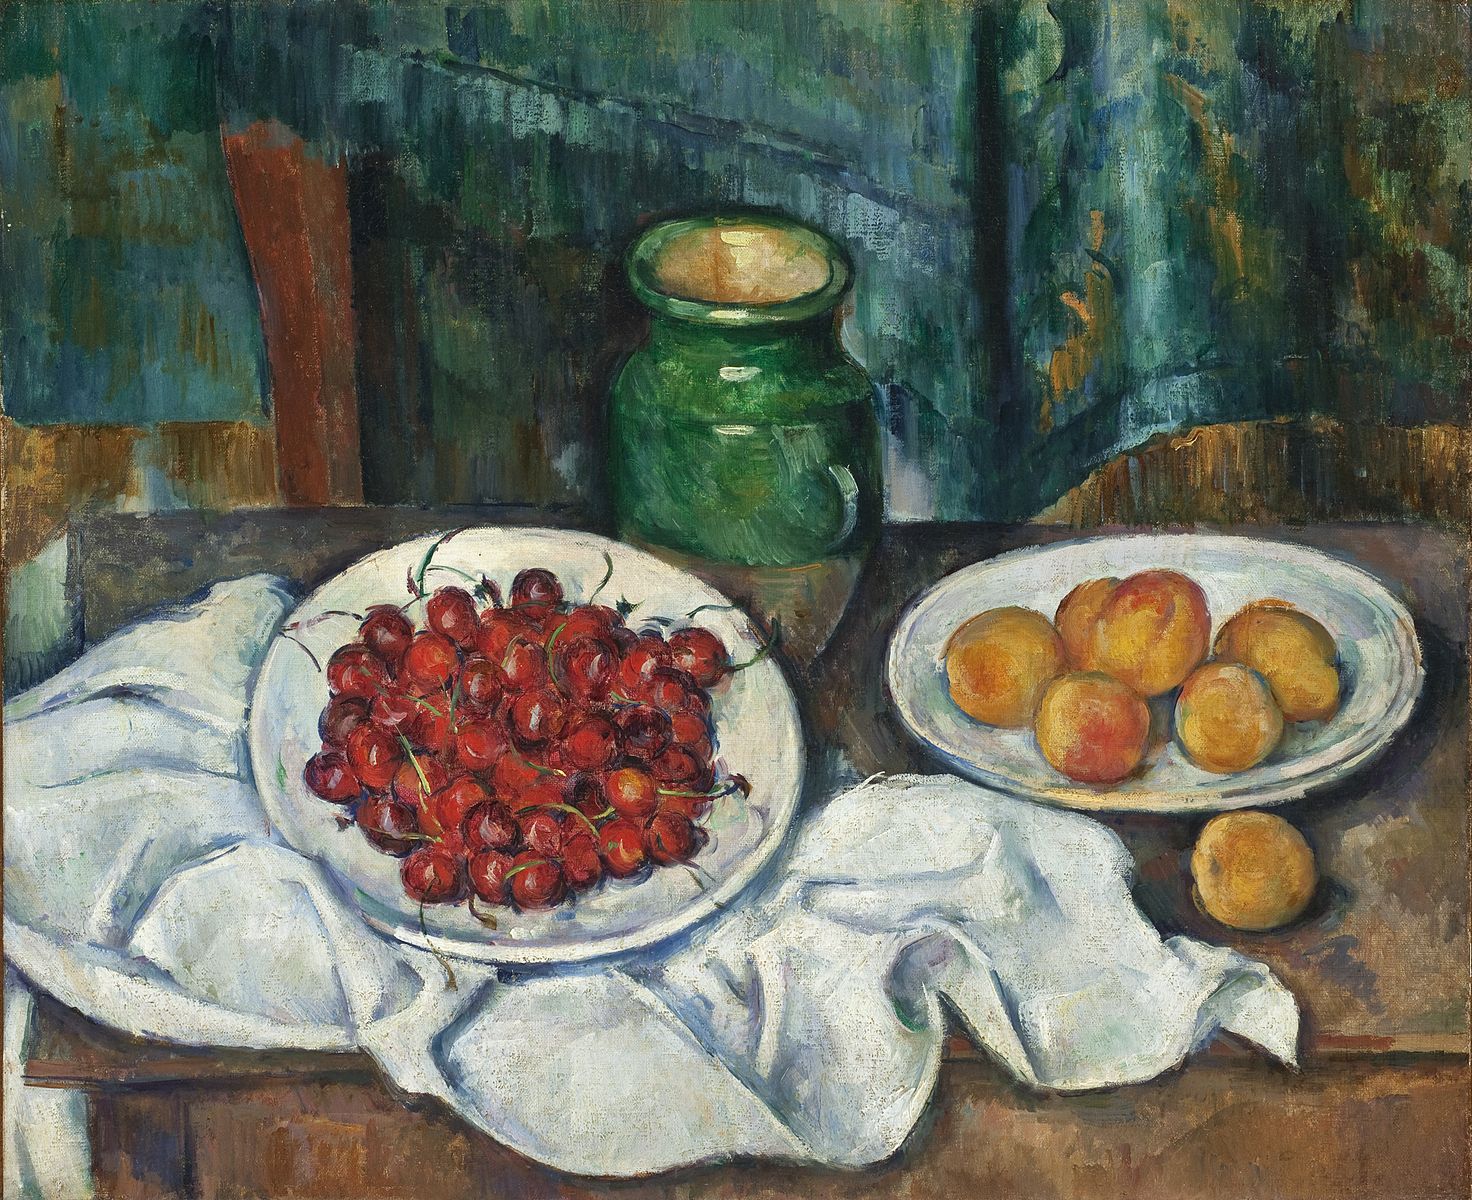 Поль Сезанн. Натюрморт з вишнями і персиками, 1885-1887